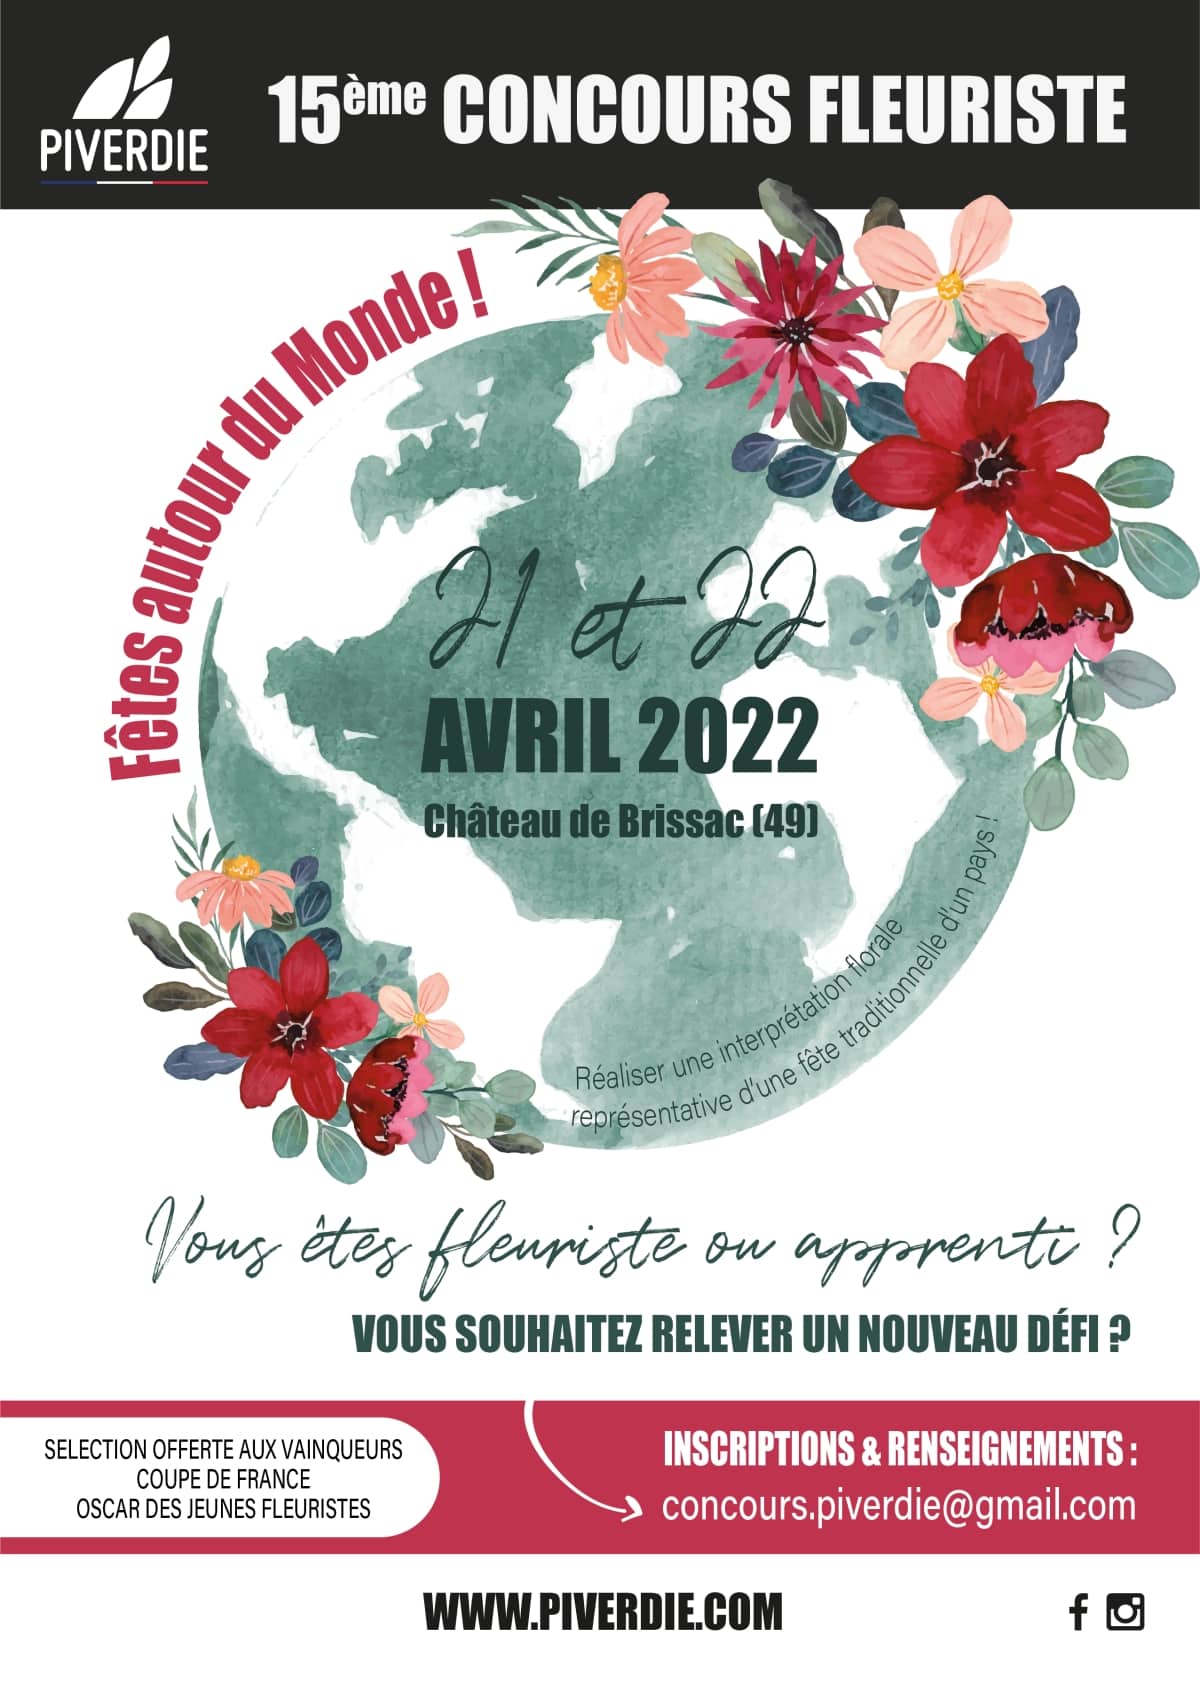 Le centre de formation PIVERDIE organise son 15ème Concours Fleuriste au Château de Brissac Quincé le 21 et 22 avril prochain.